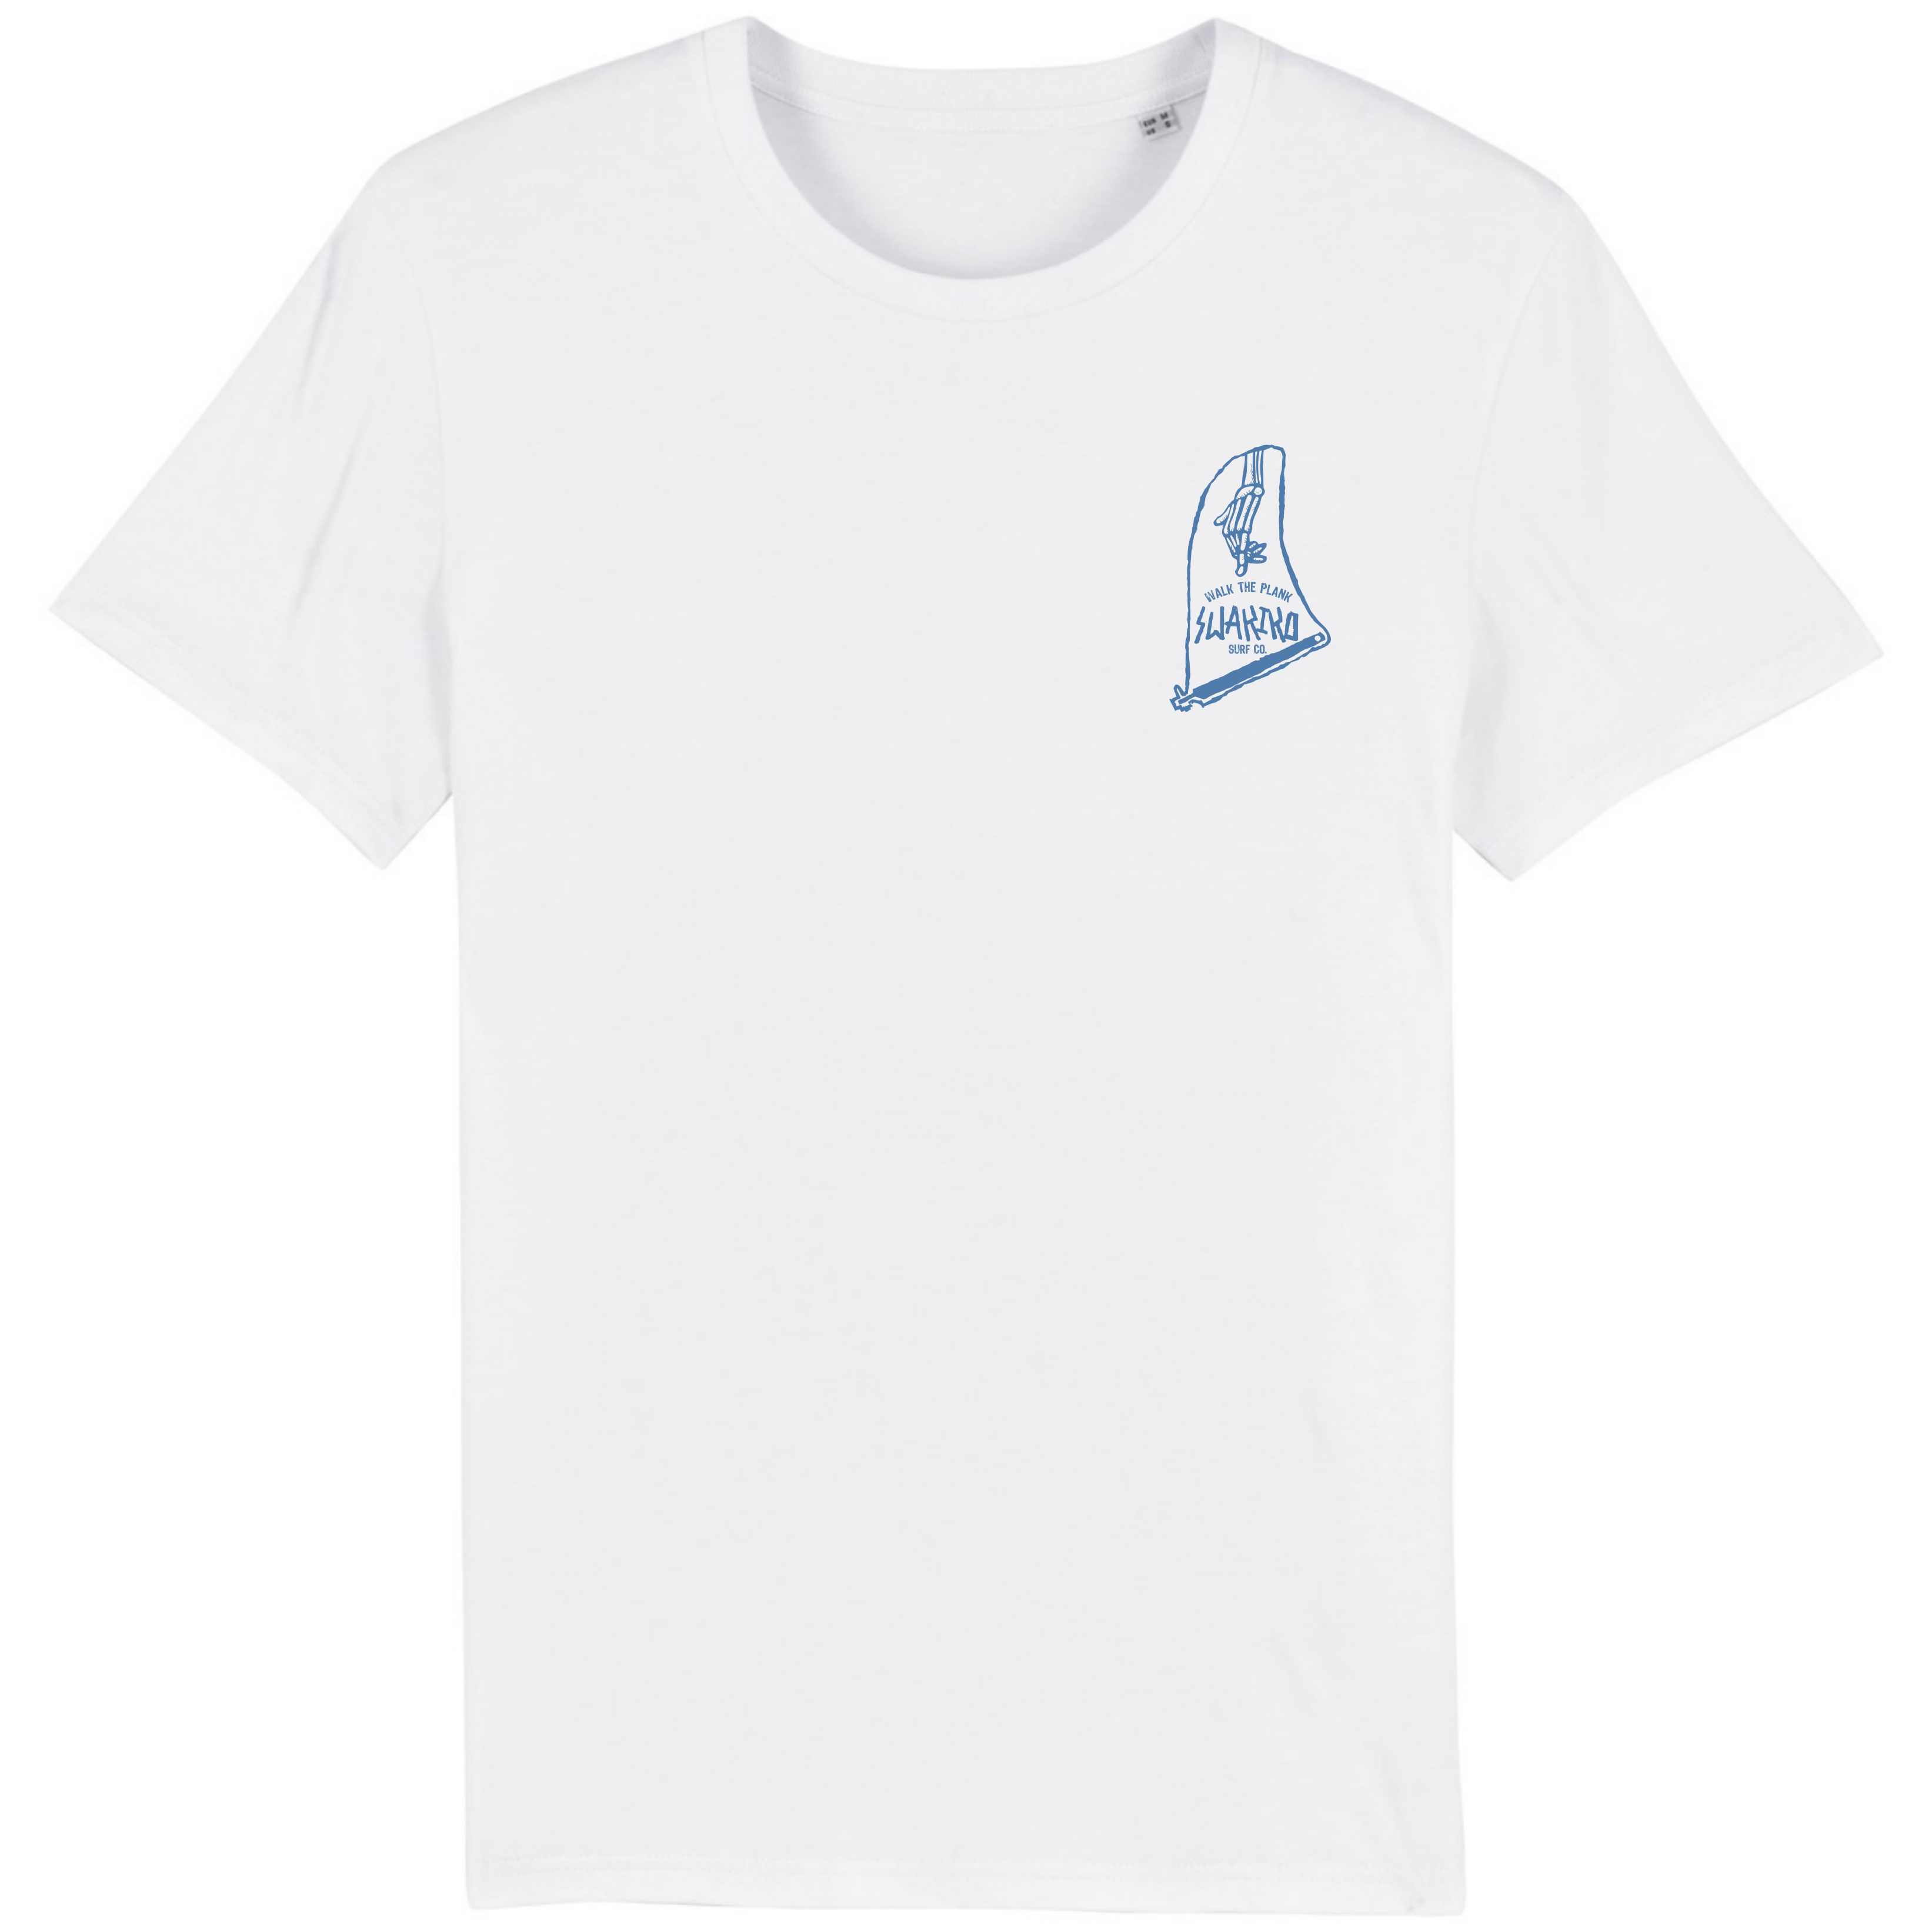 Wit T-shirt met blauwe borstprint van een fin met de tekst\' \'walk the plank\'